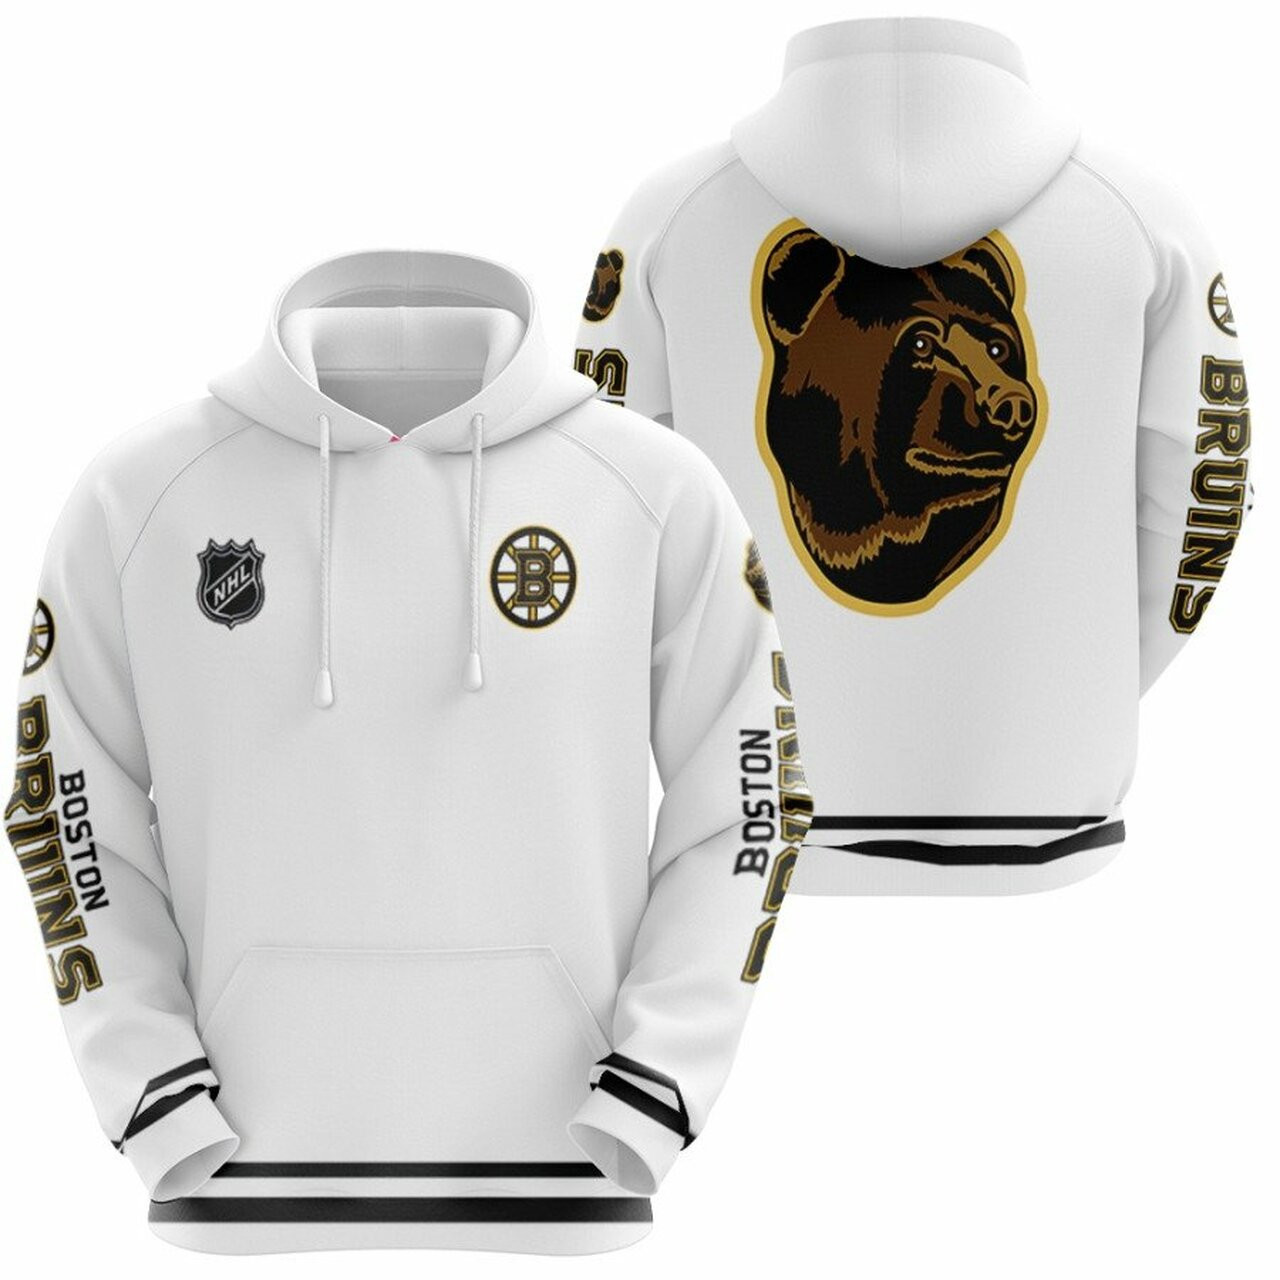 Boston Bruins Nhl Ice Hockey Team Blades The Bruin Logo Mascot White 3d Designed Allover Gift For Bruins Fans Hoodie